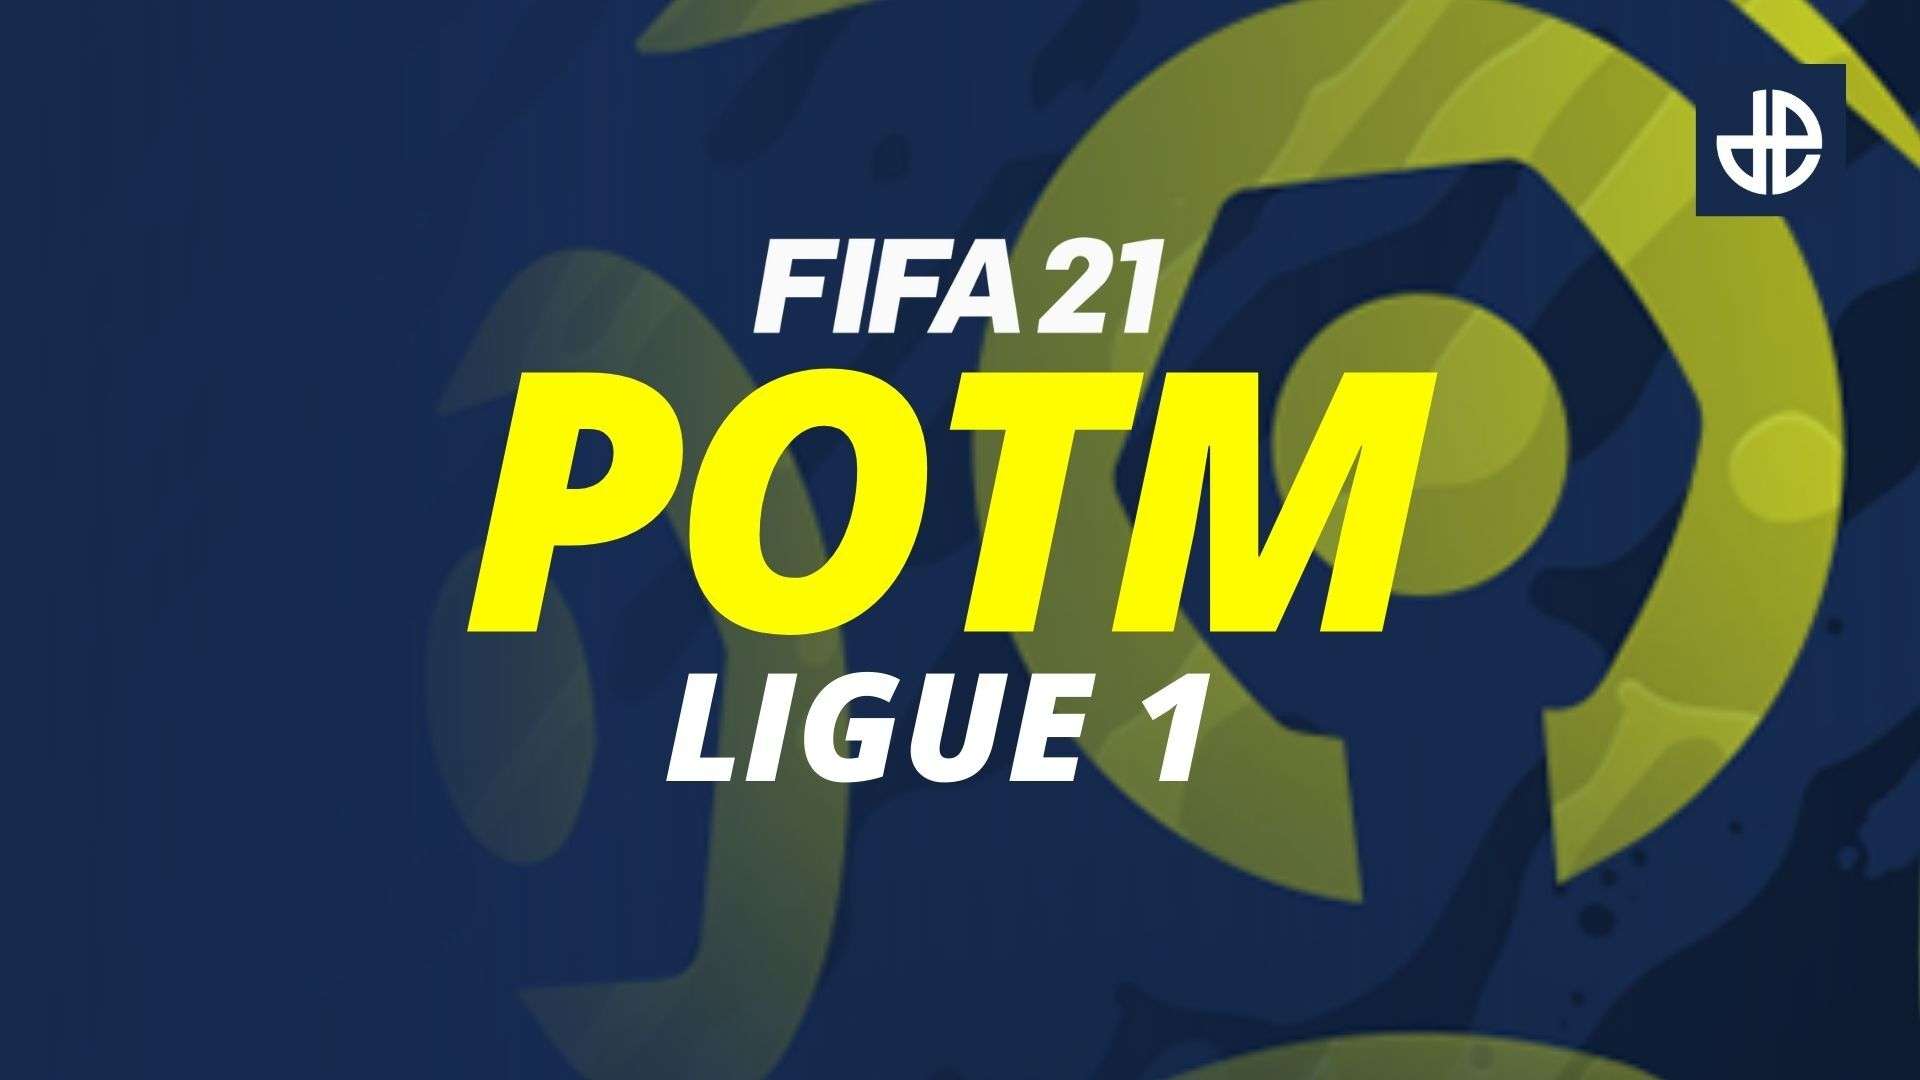 FIFA 21 POTM Ligue 1